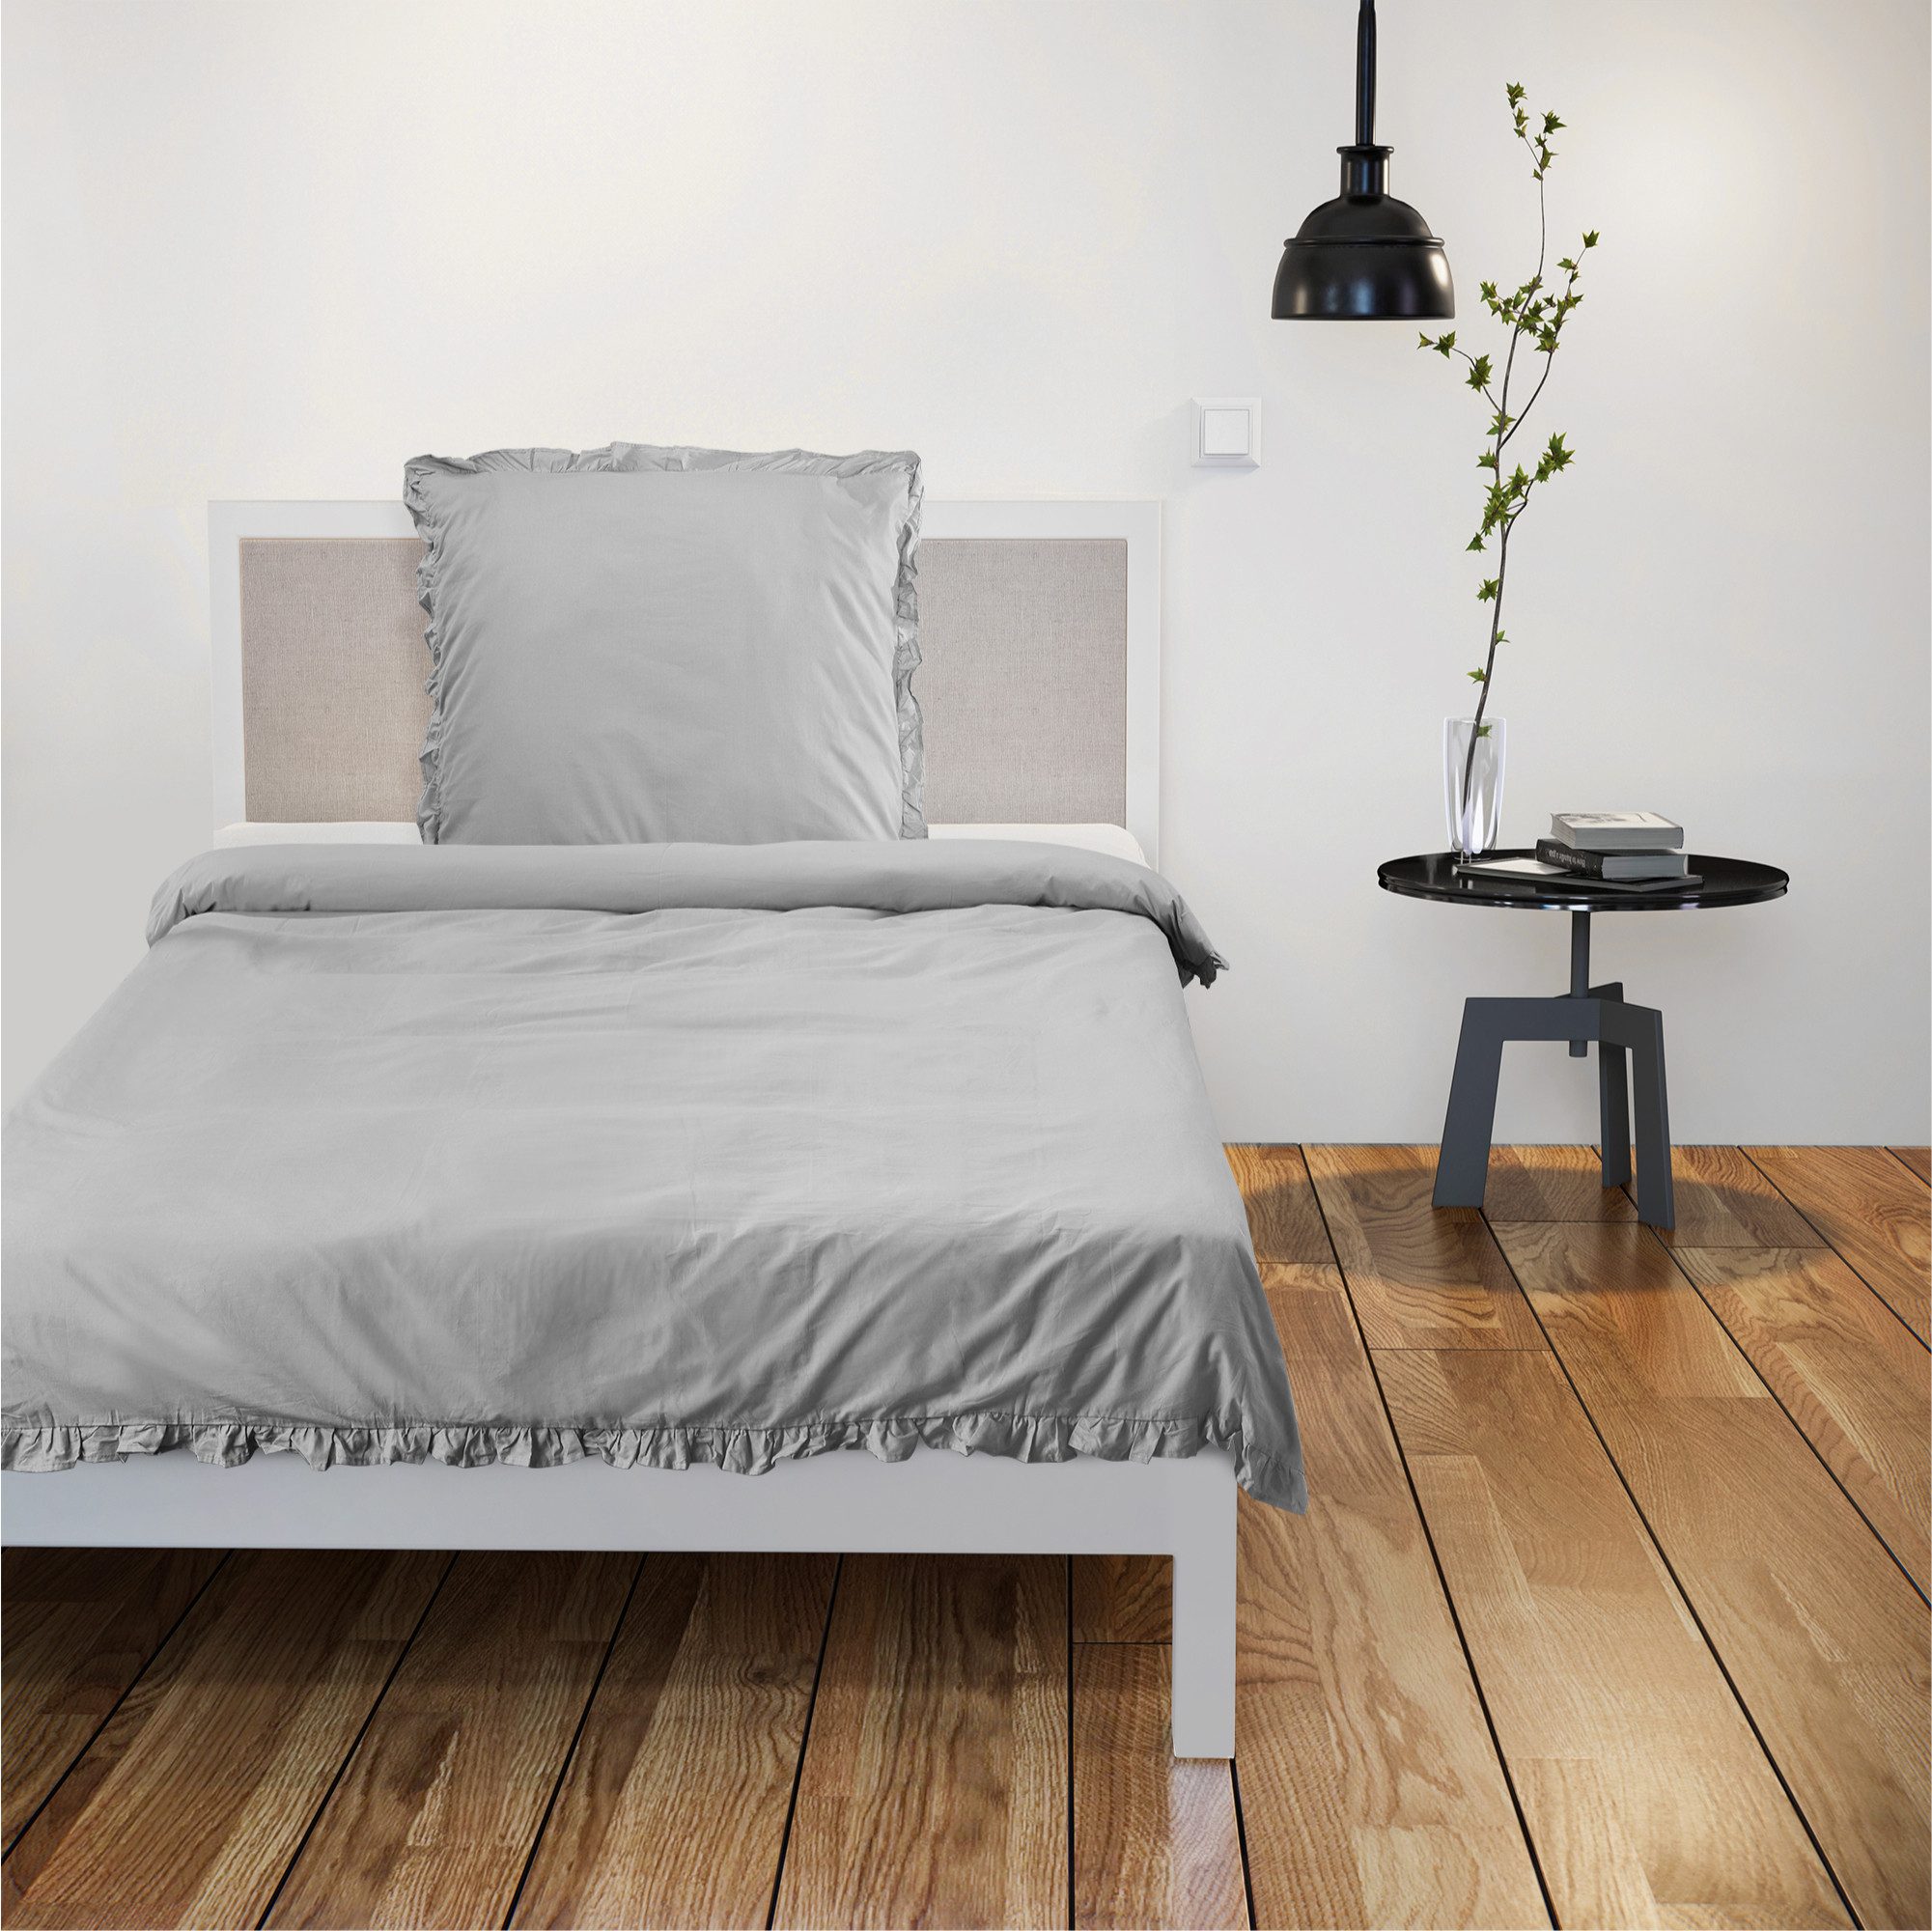 Bettwäsche Bettwäsche mit Rüschen Set - 135 x 200 cm - Einzel Set grau, JEMIDI, 1 teilig